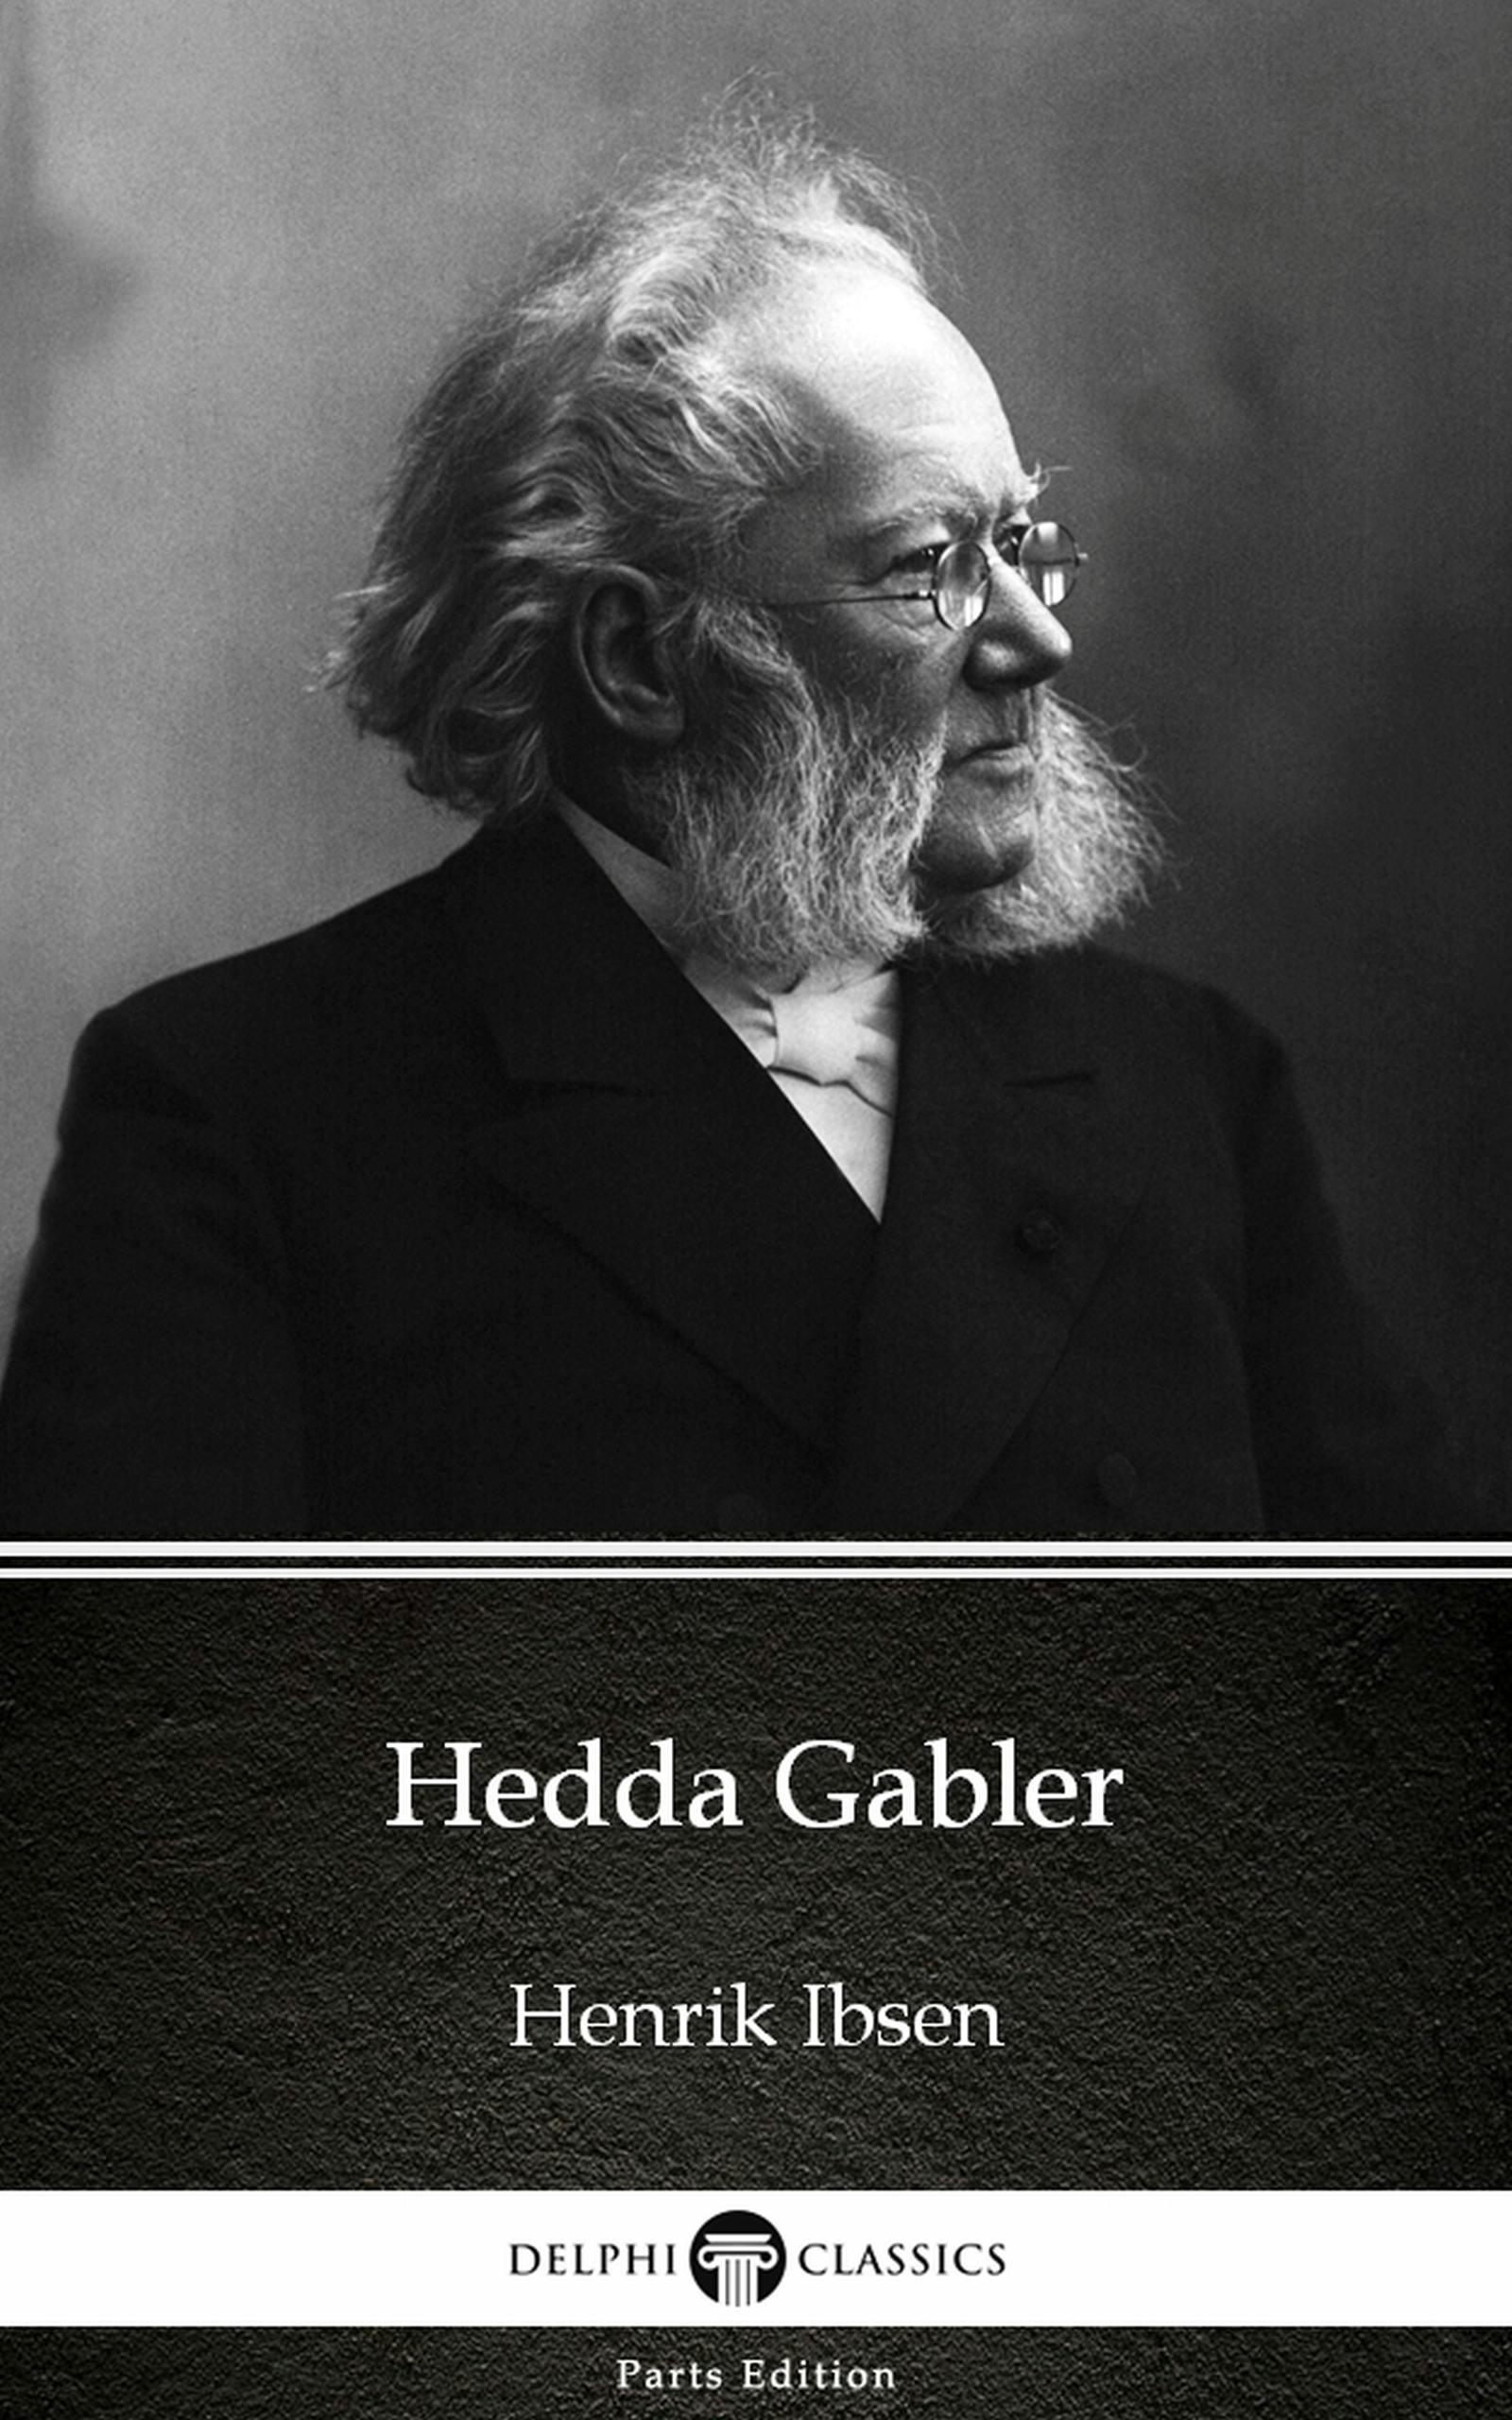 Hedda Gabler by Henrik Ibsen - Delphi Classics (Illustrated) - undefined